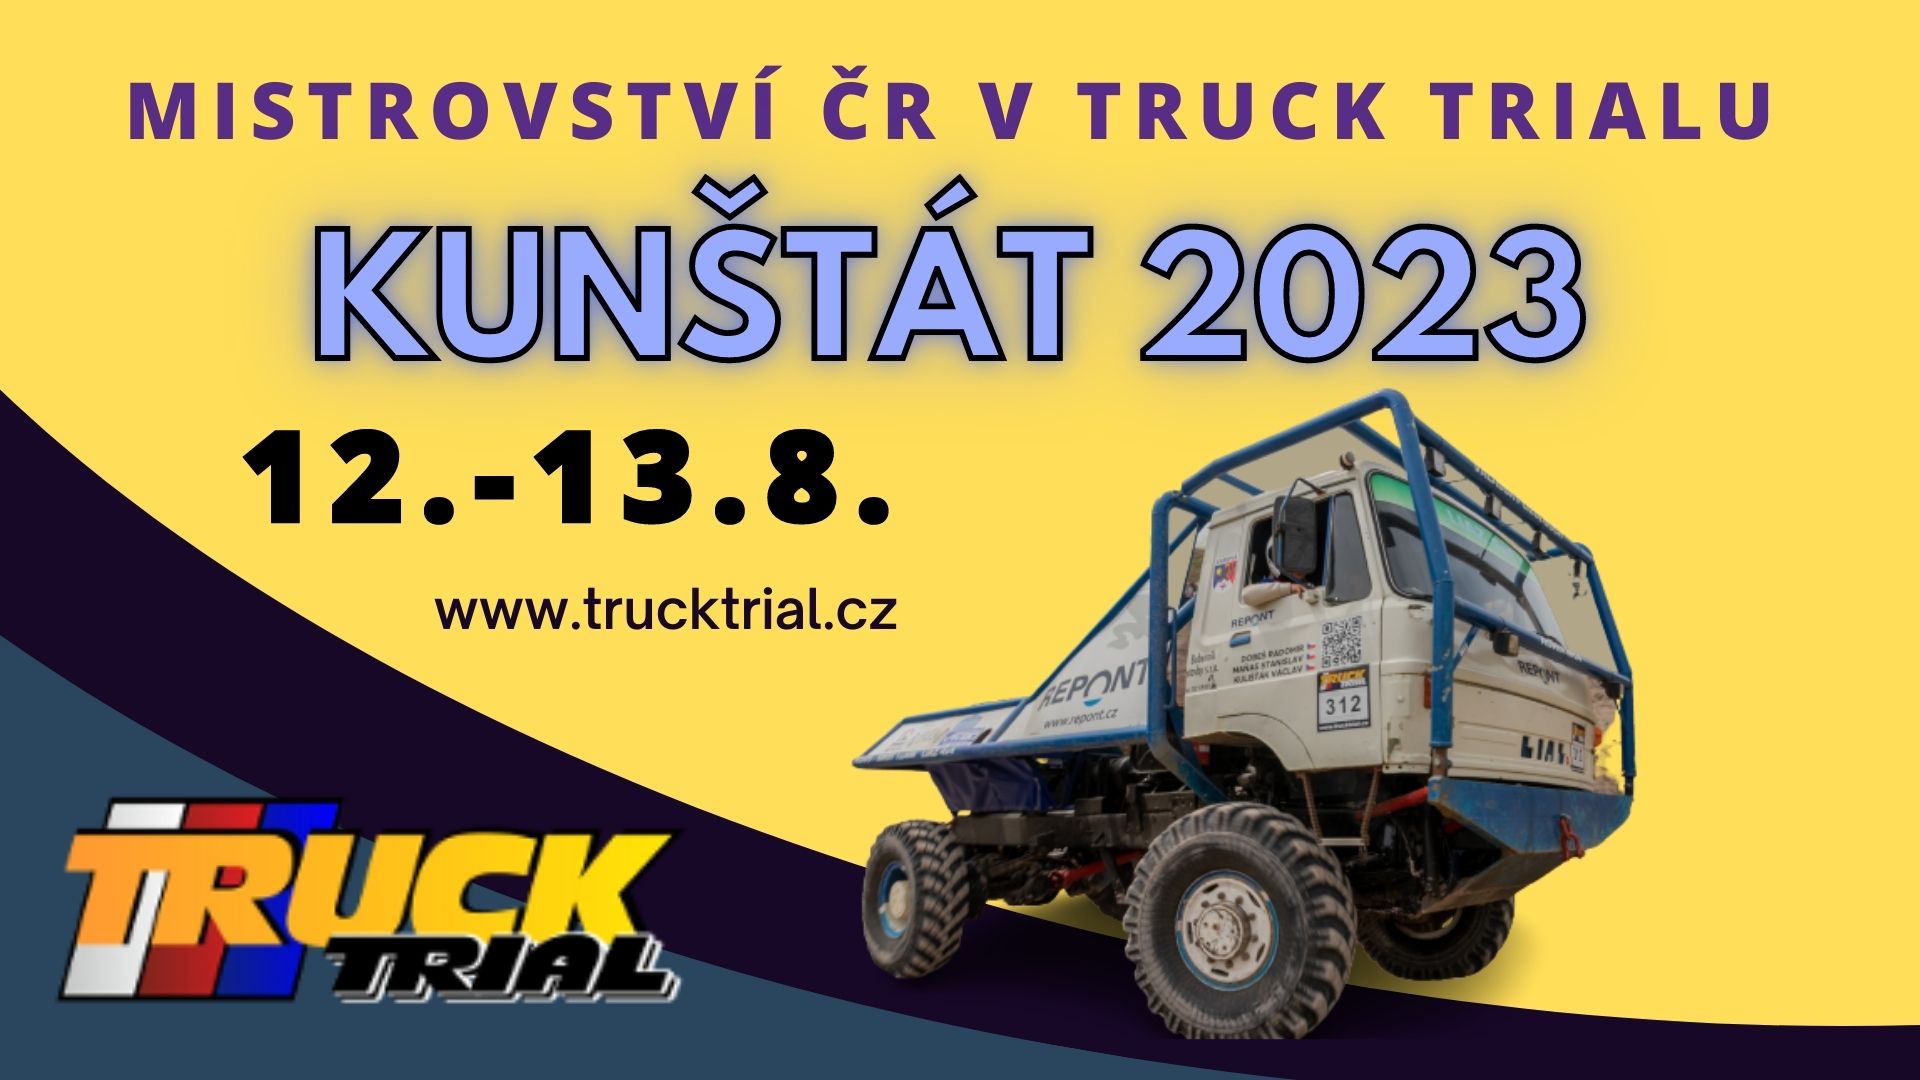 Mistrovství ČR v Truck trialu 2023 - Kunštát na Blanensku